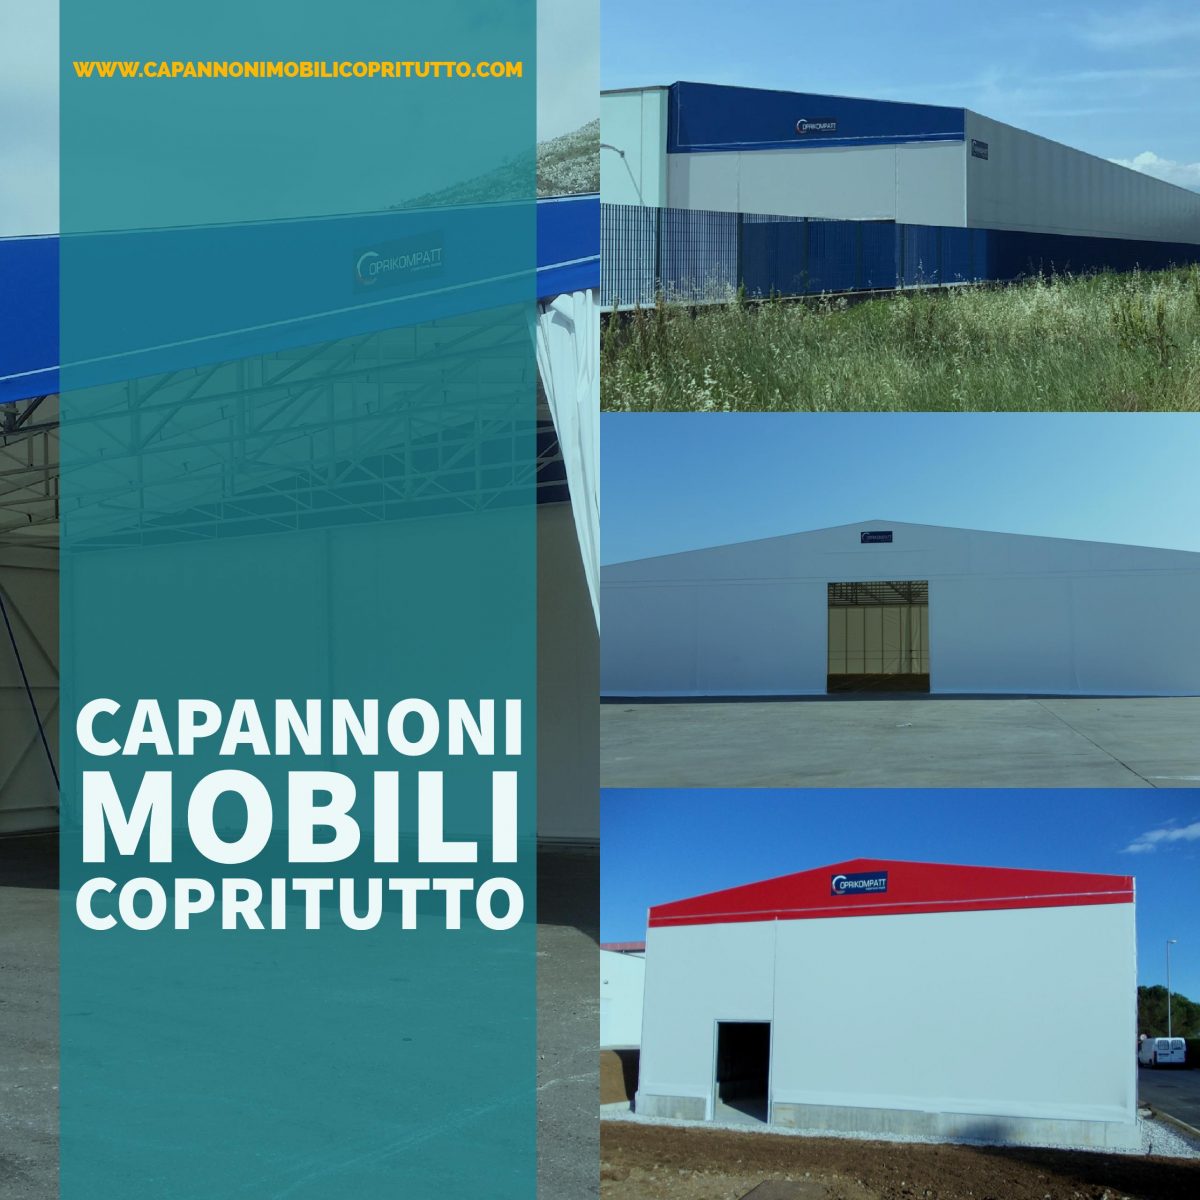 Capannoni-mobili_COPRITUTTO (47)